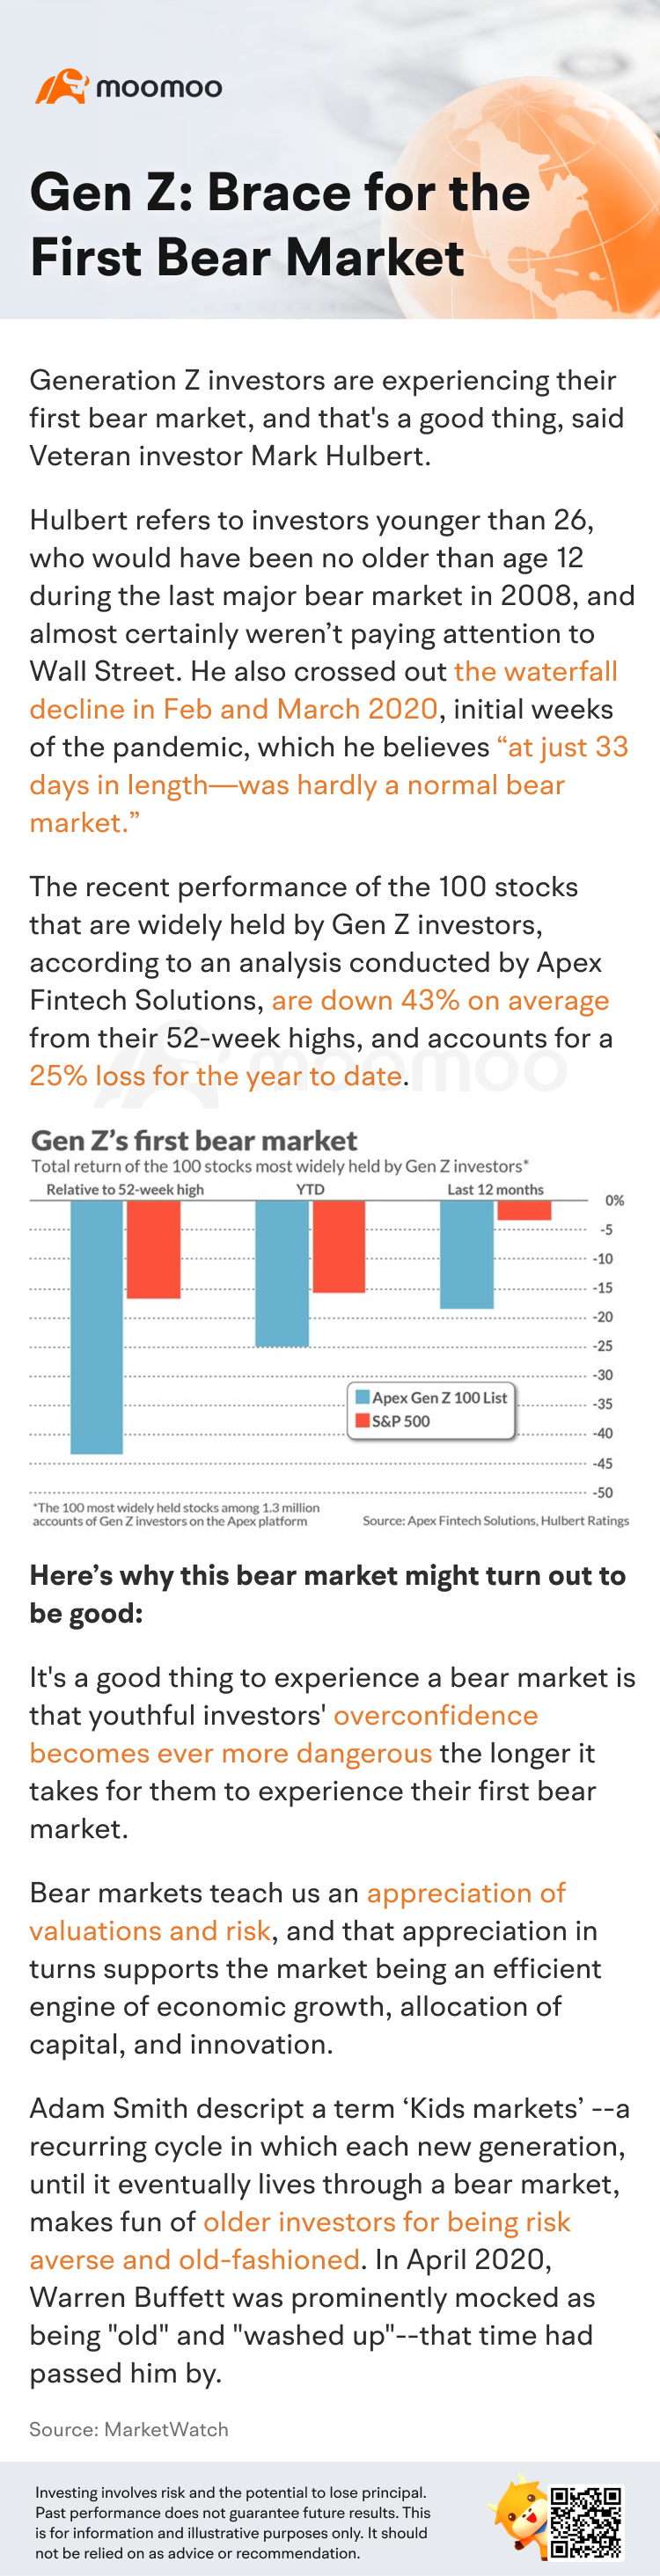 Gen Z: Brace for the first bear market